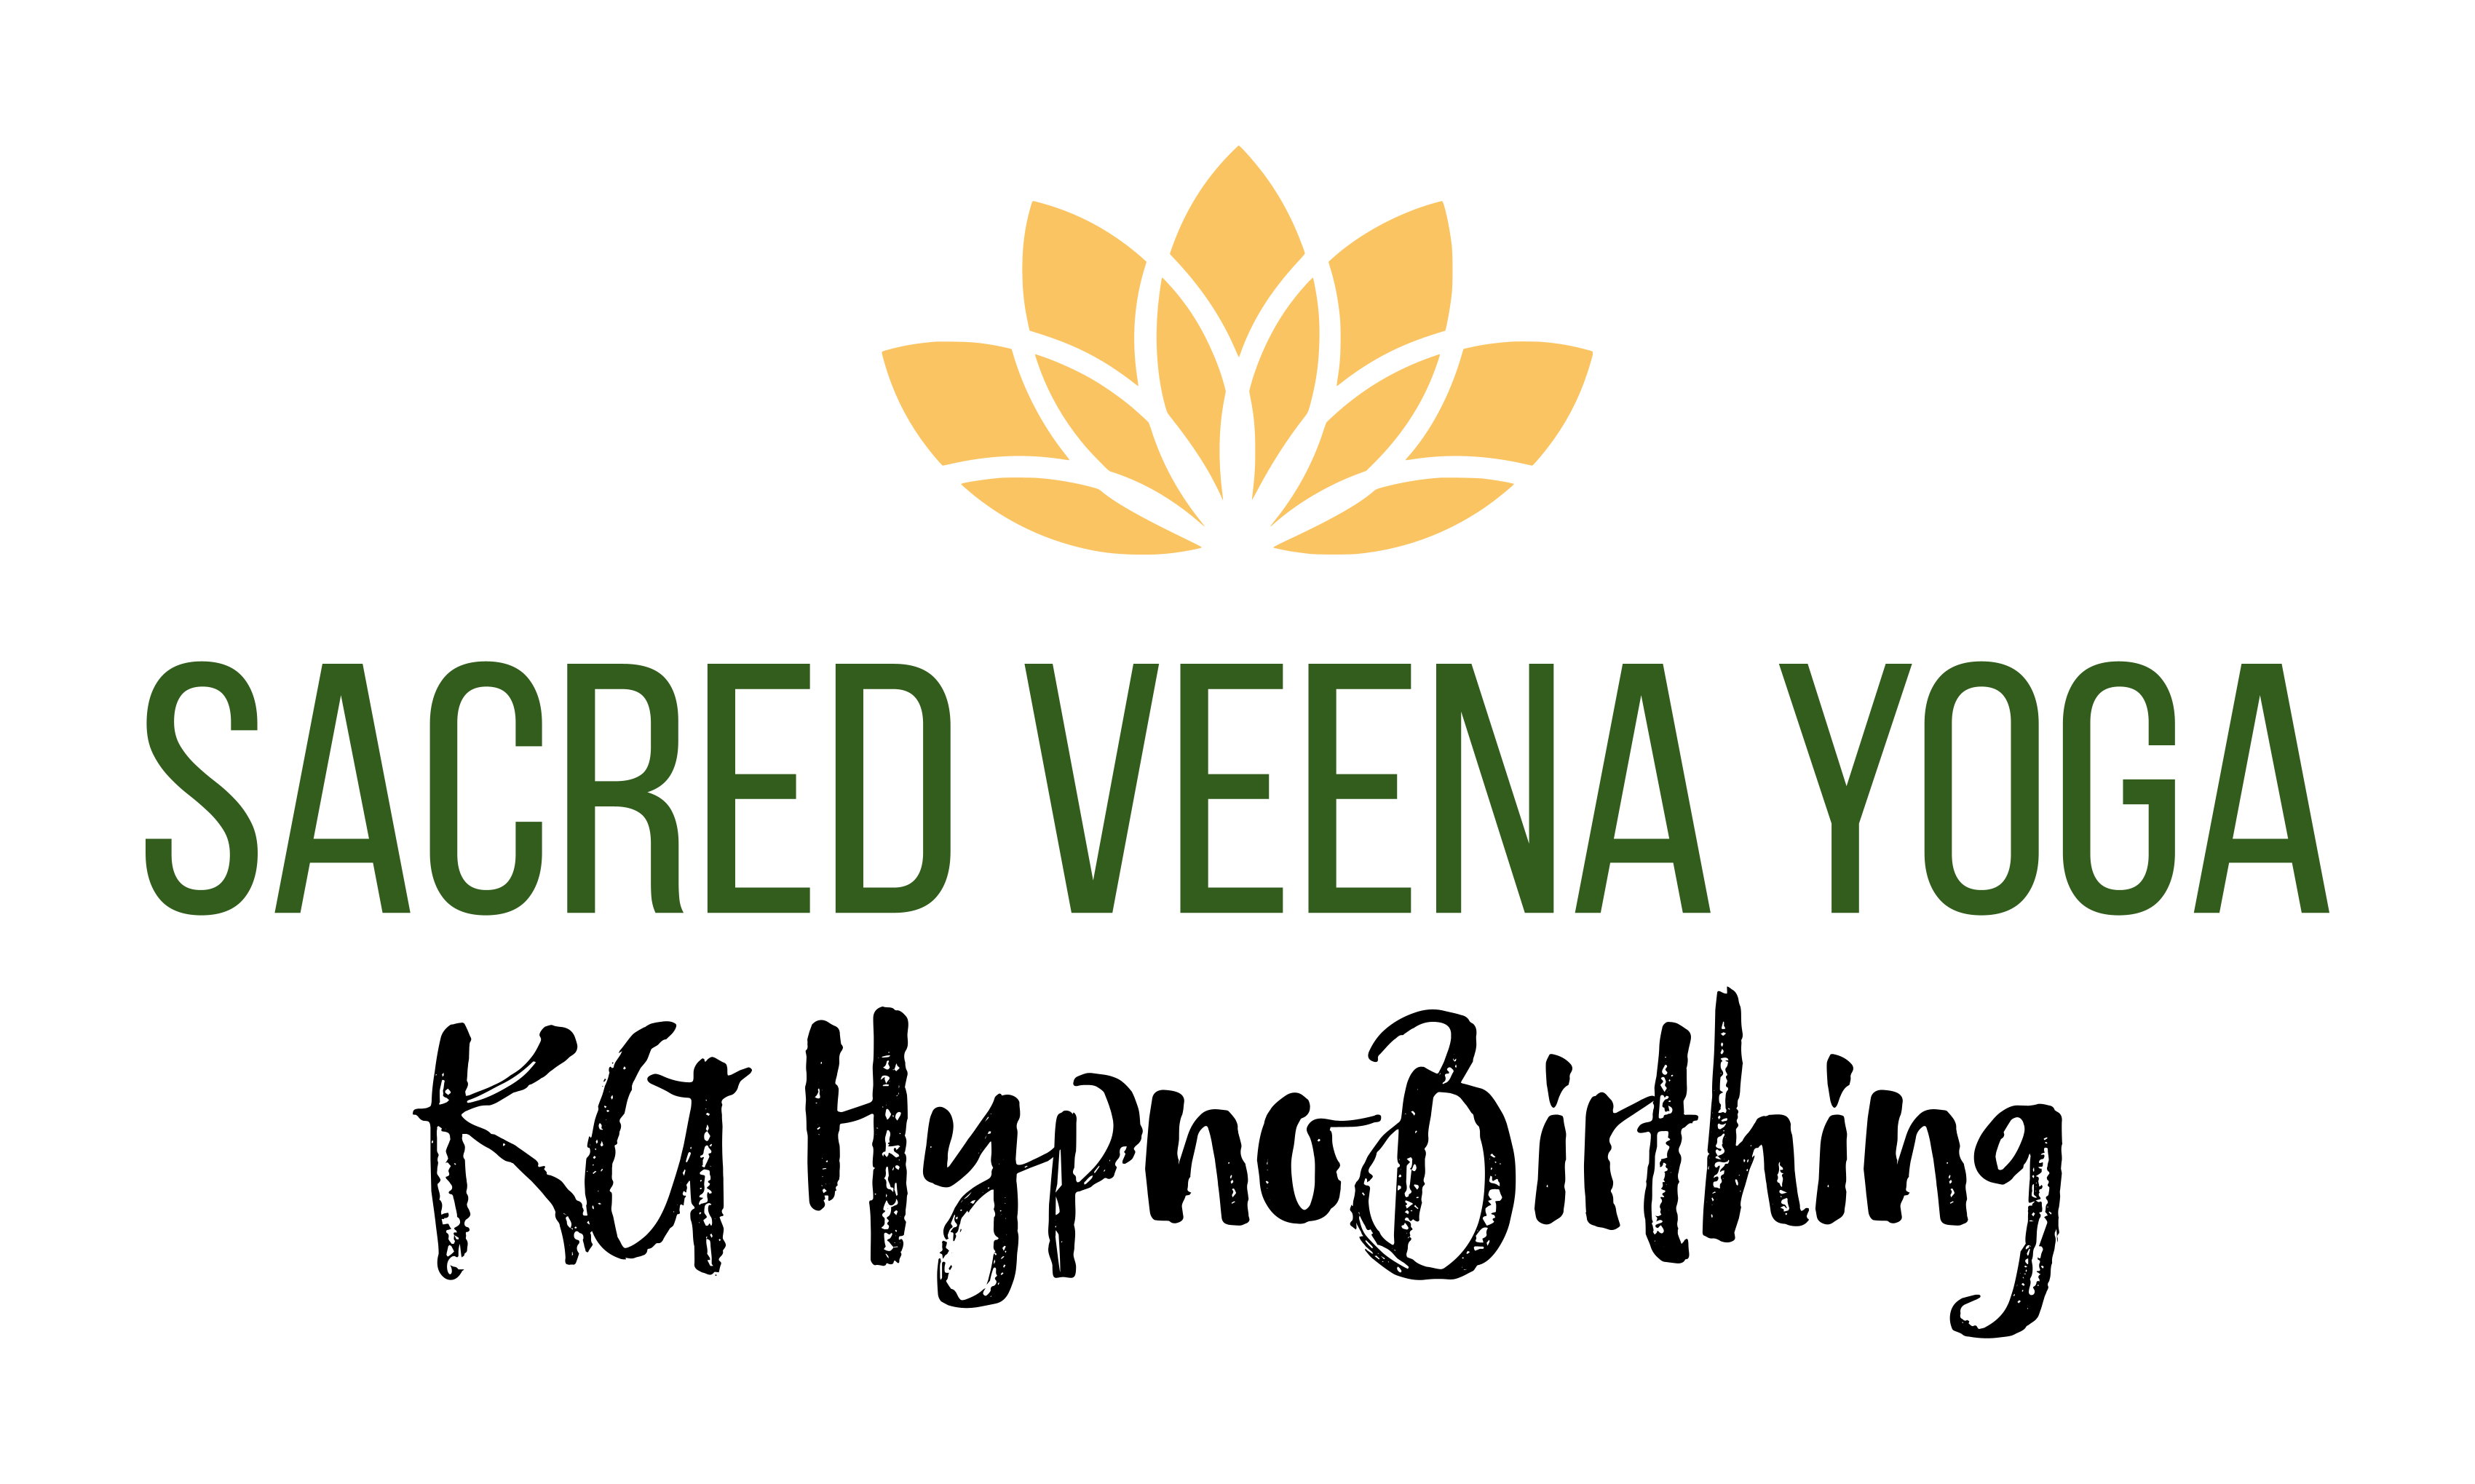 Sacred Veena Yoga